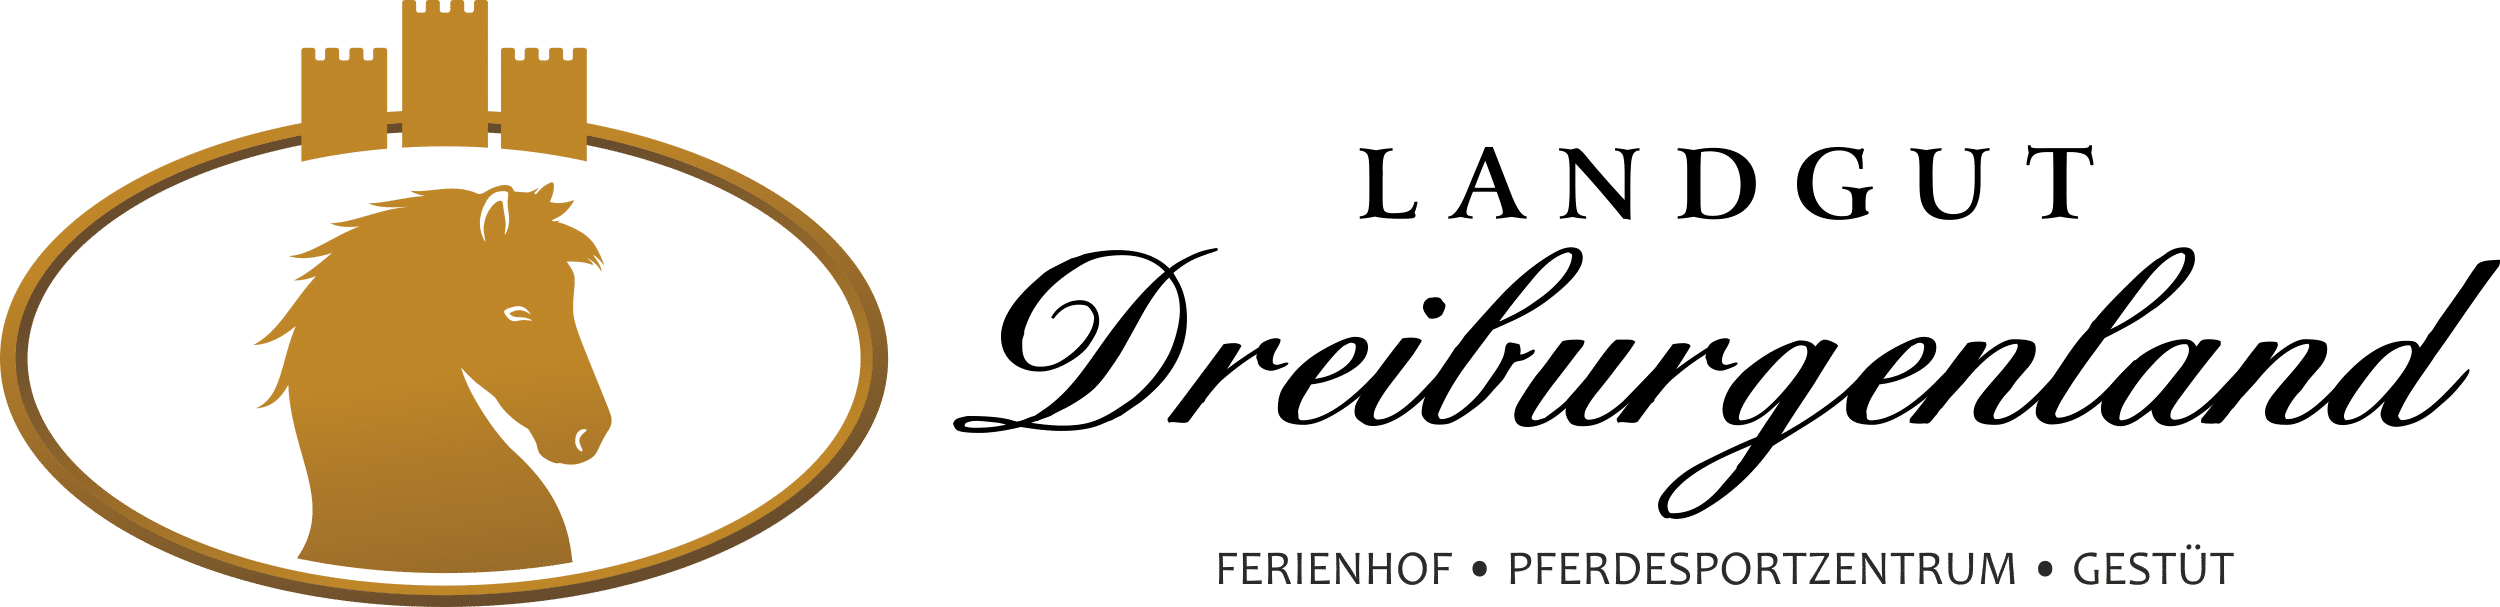 Ferienhof, Pferdesportzentrum und Gestüt "Landgut Dreiburgenland" | Reiterferien in Bayern - Landgut-Dreiburgenland